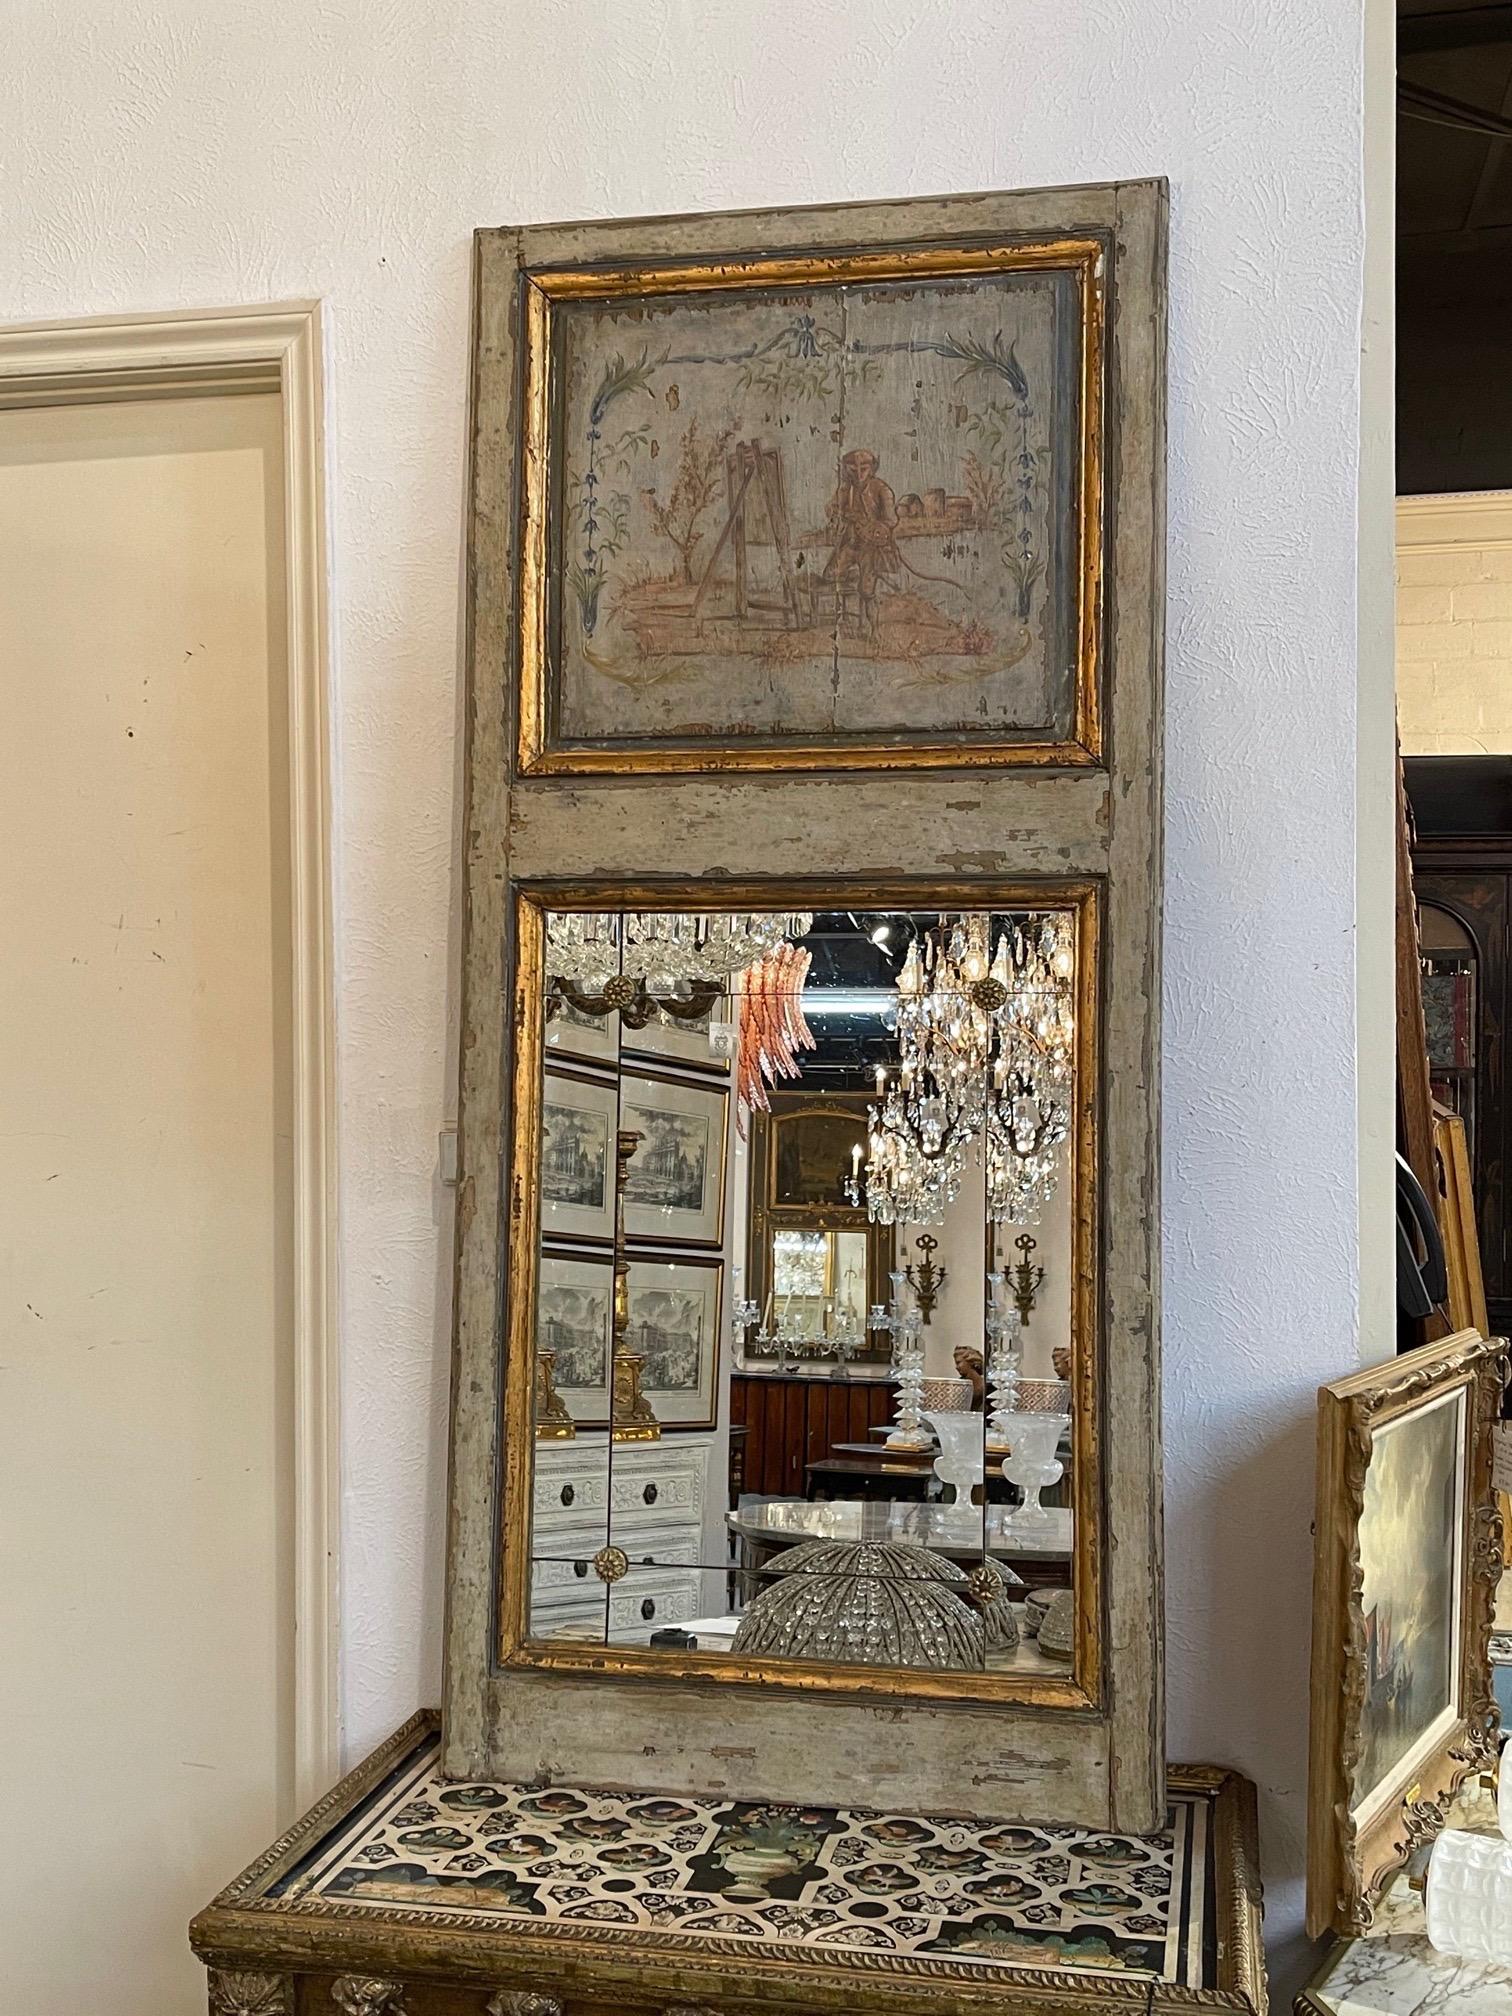 Schöner französisch bemalter Trumeau-Spiegel aus dem 19. Jahrhundert mit einer gemalten Szene mit Affen. Beachten Sie auch die geteilten Spiegelbereiche. Ein interessantes Accessoire!